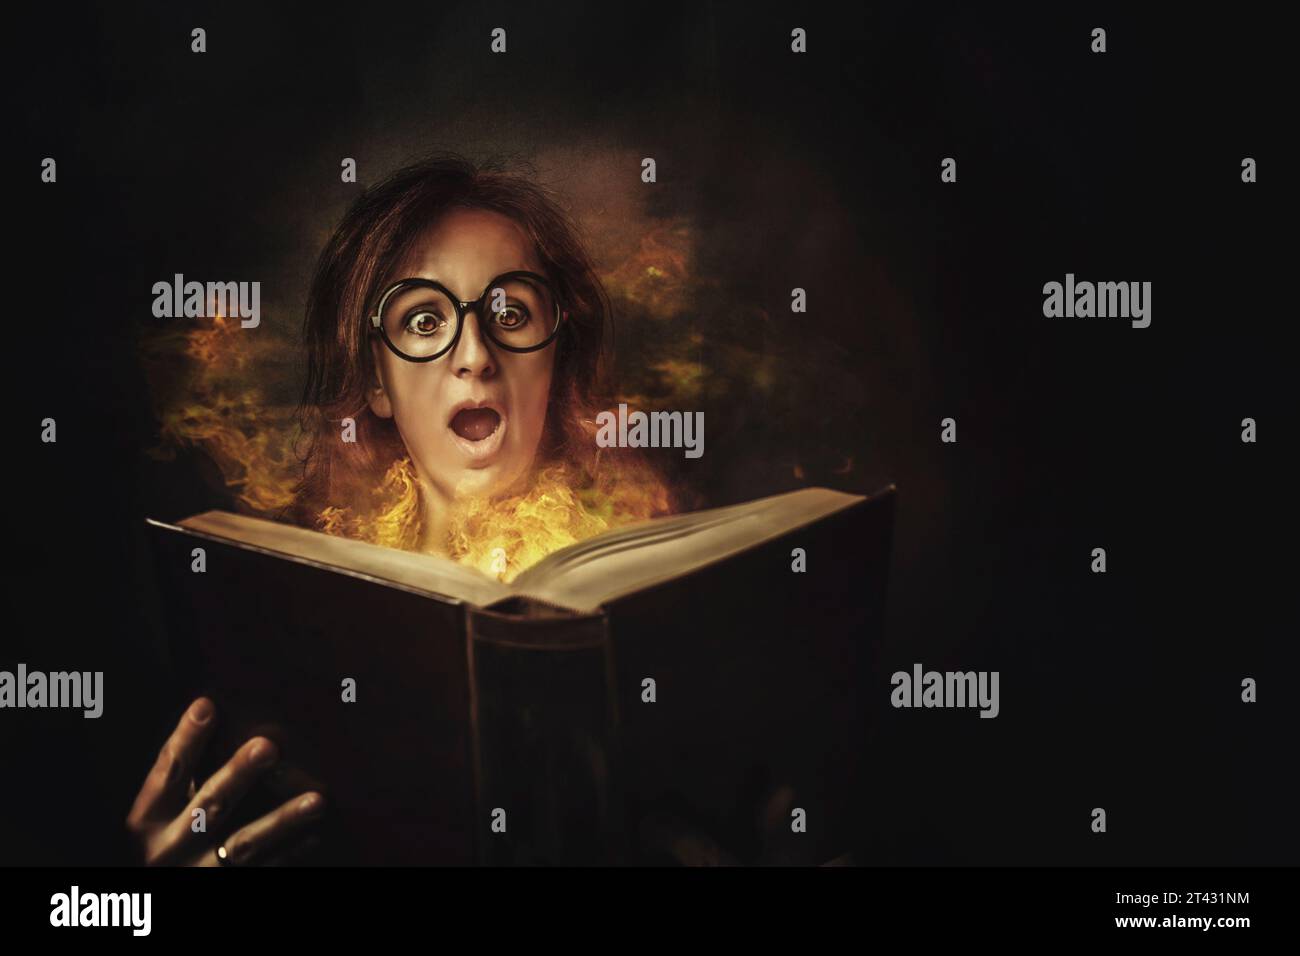 Ritratto di una donna spaventata che apre un libro con pagine in fiamme Foto Stock